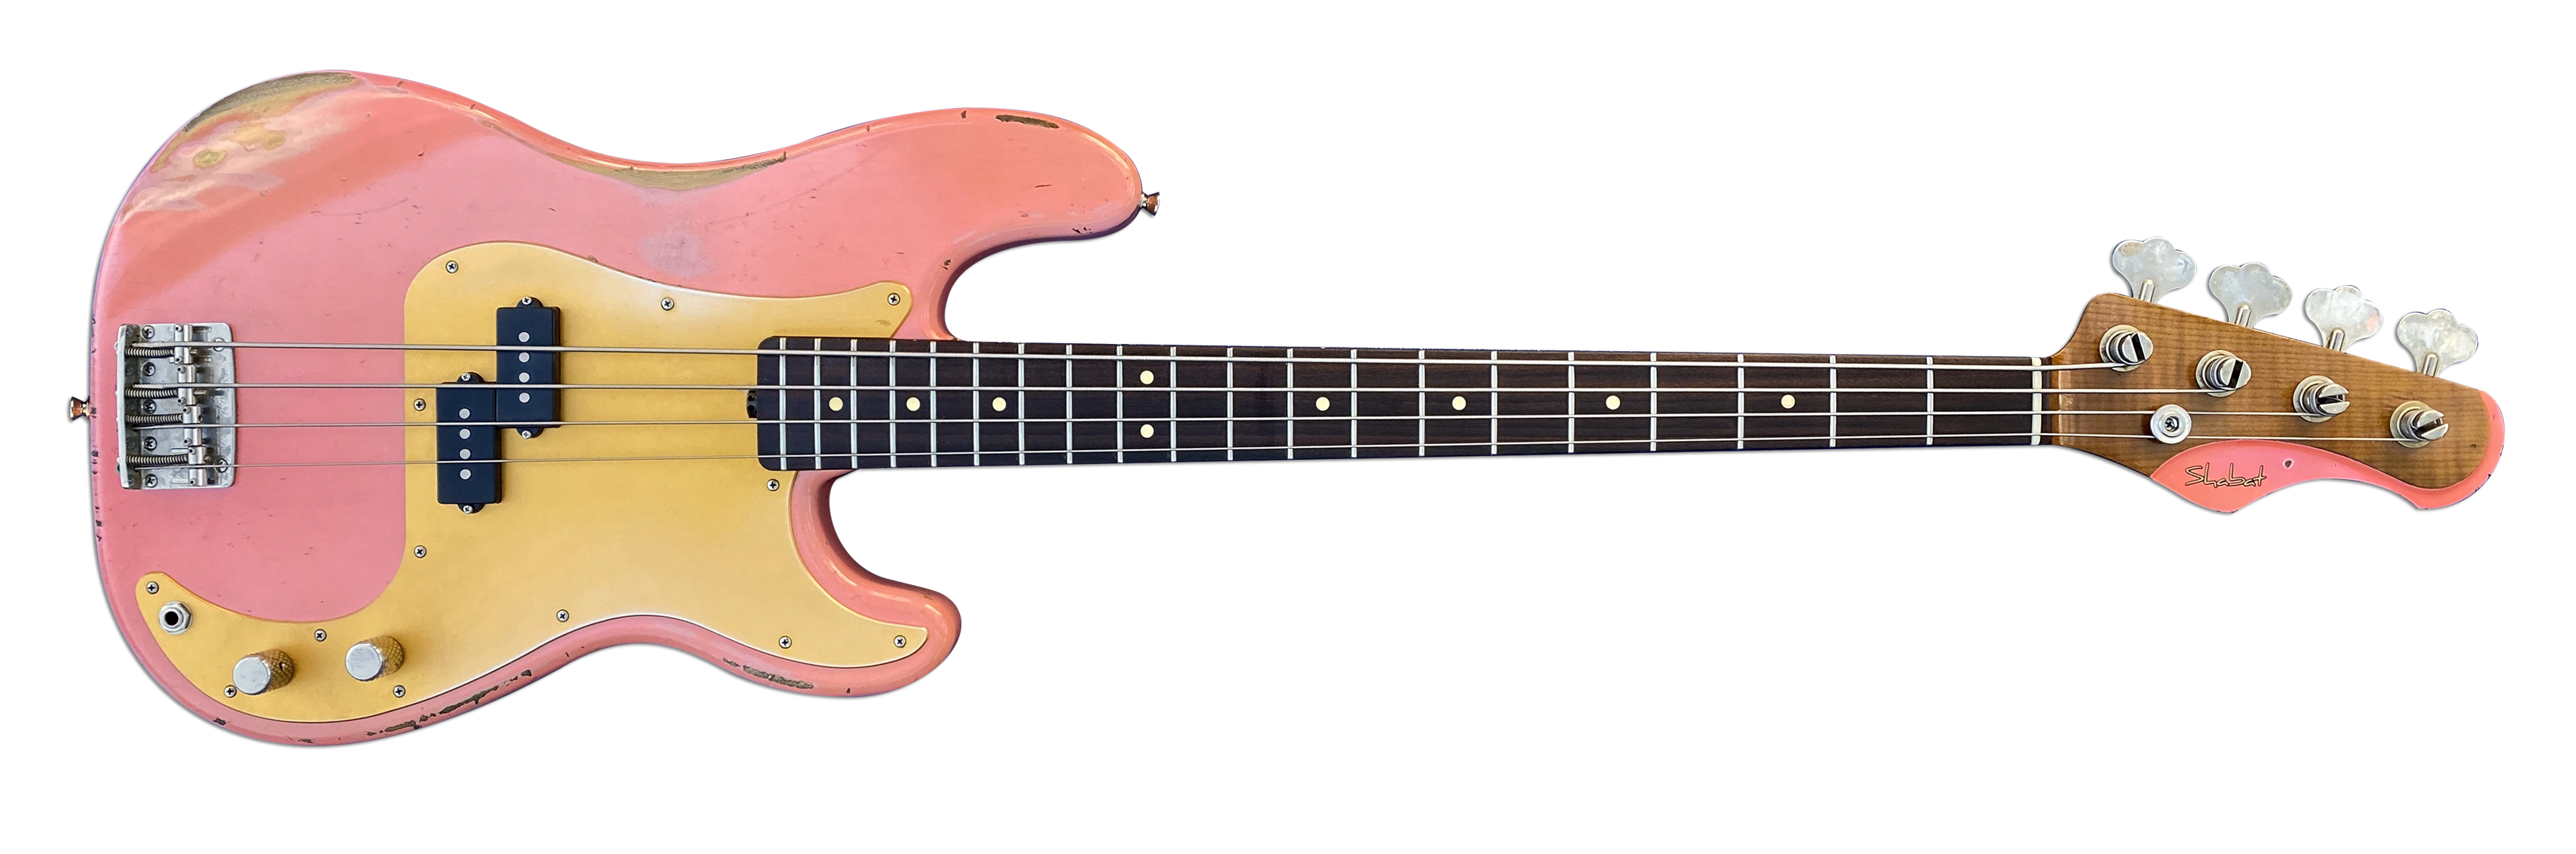 Shabat Panther Custom Electric Bass Guitar